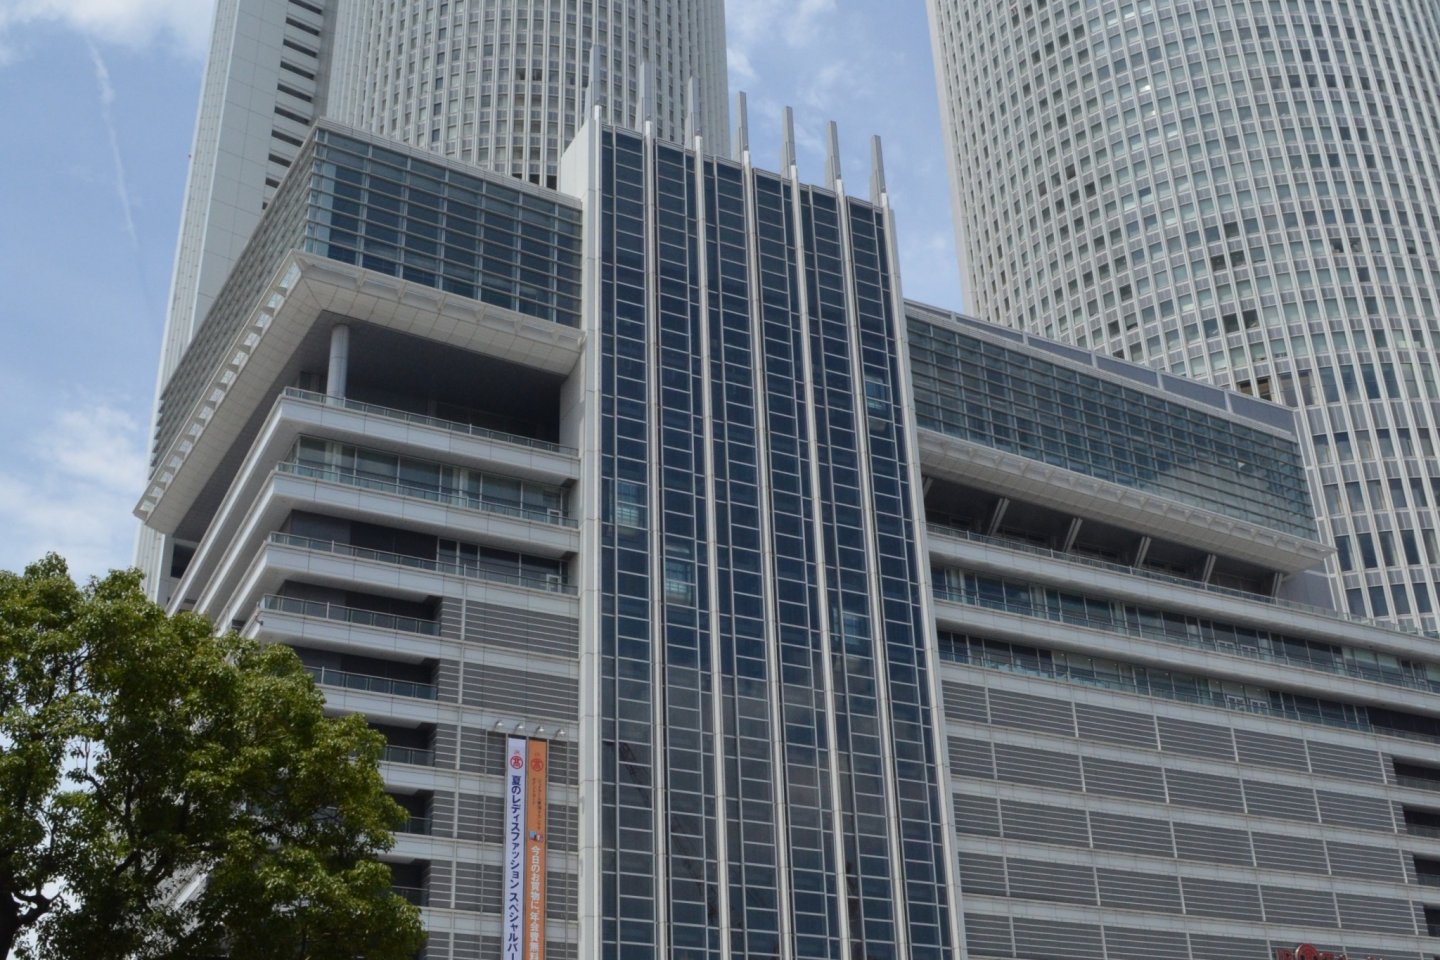 JR Central Tower ตึกแฝดคู่กันสัญลักษณ์ของสถานีรถไฟนาโกย่า